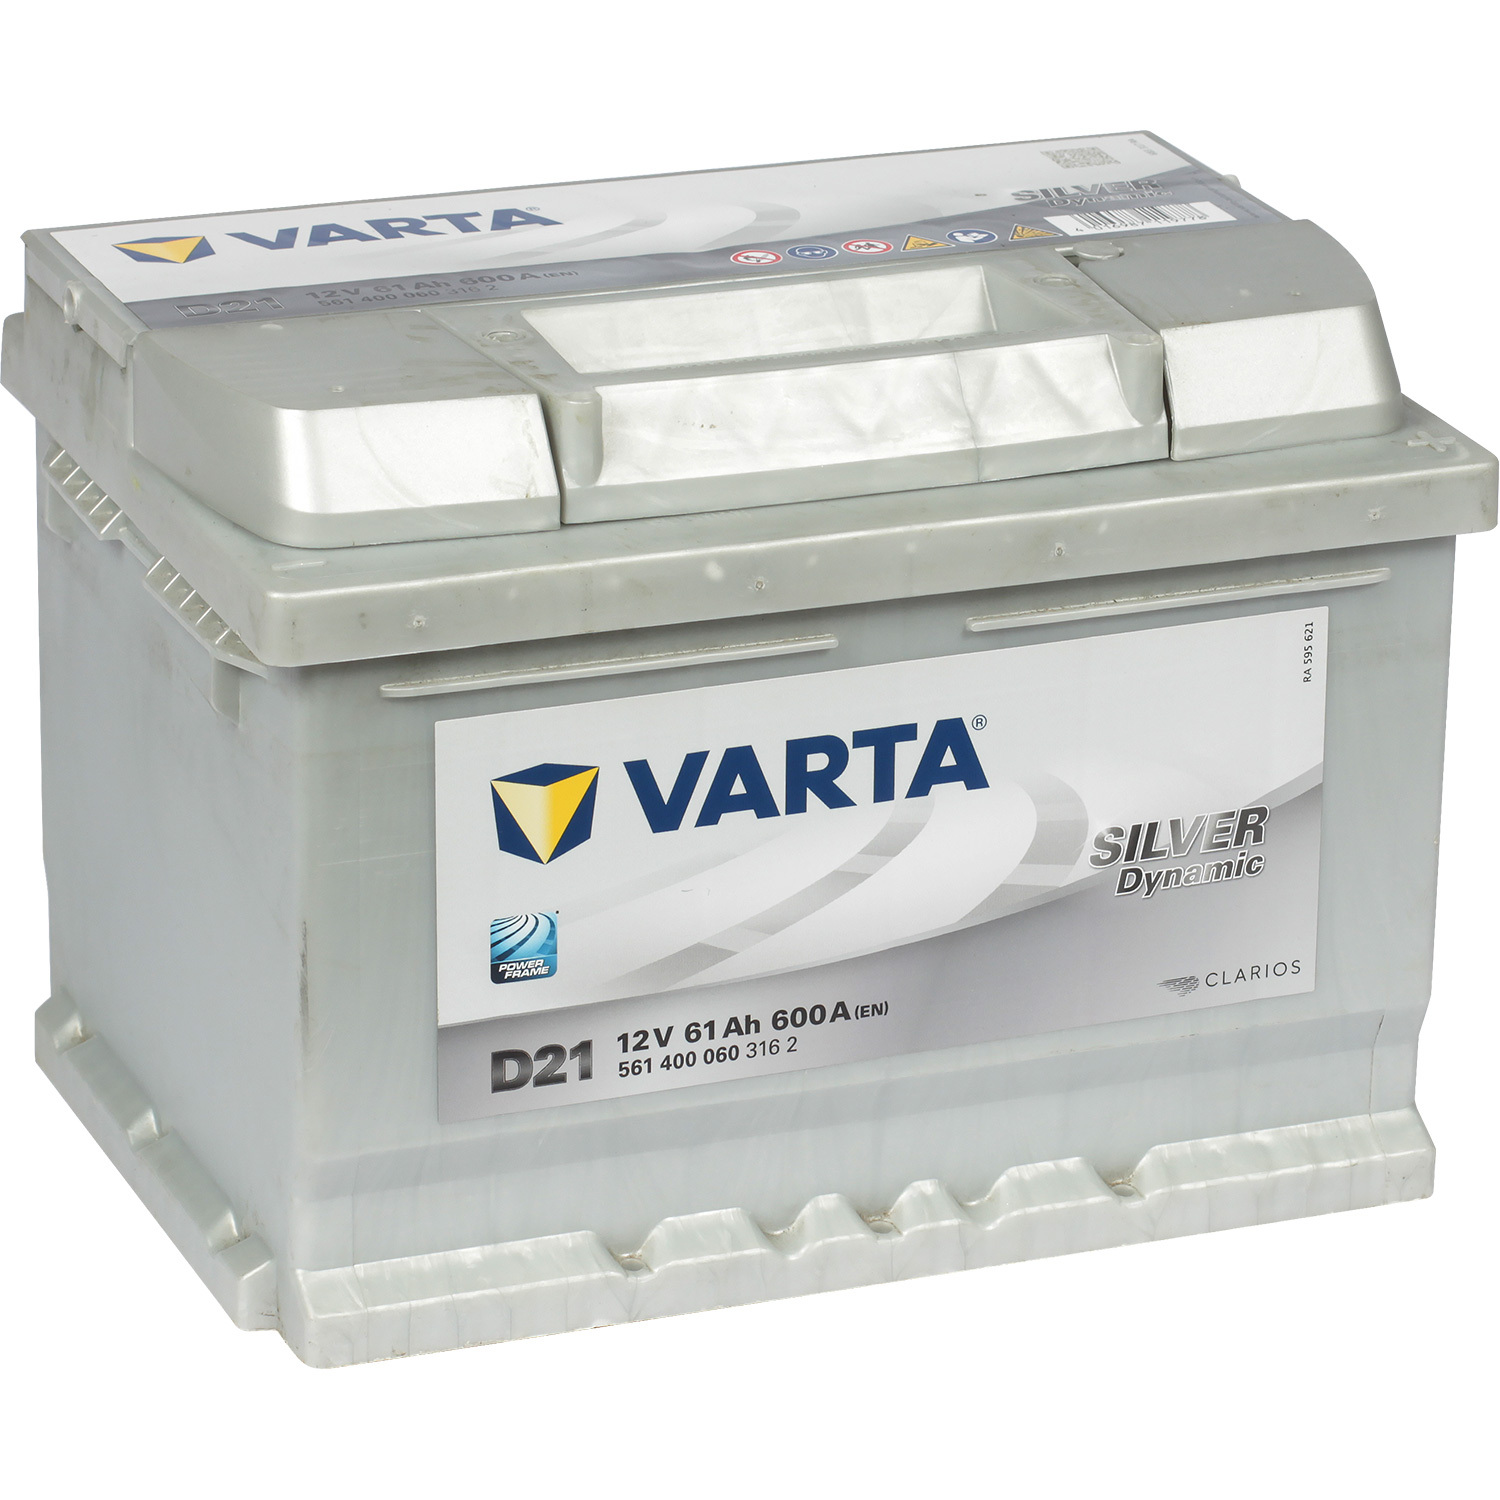 Varta Автомобильный аккумулятор Varta Silver Dynamic 561 400 060 61 Ач обратная полярность LB2 пусковой многофункциональный аккумулятор patriot magnum 8p